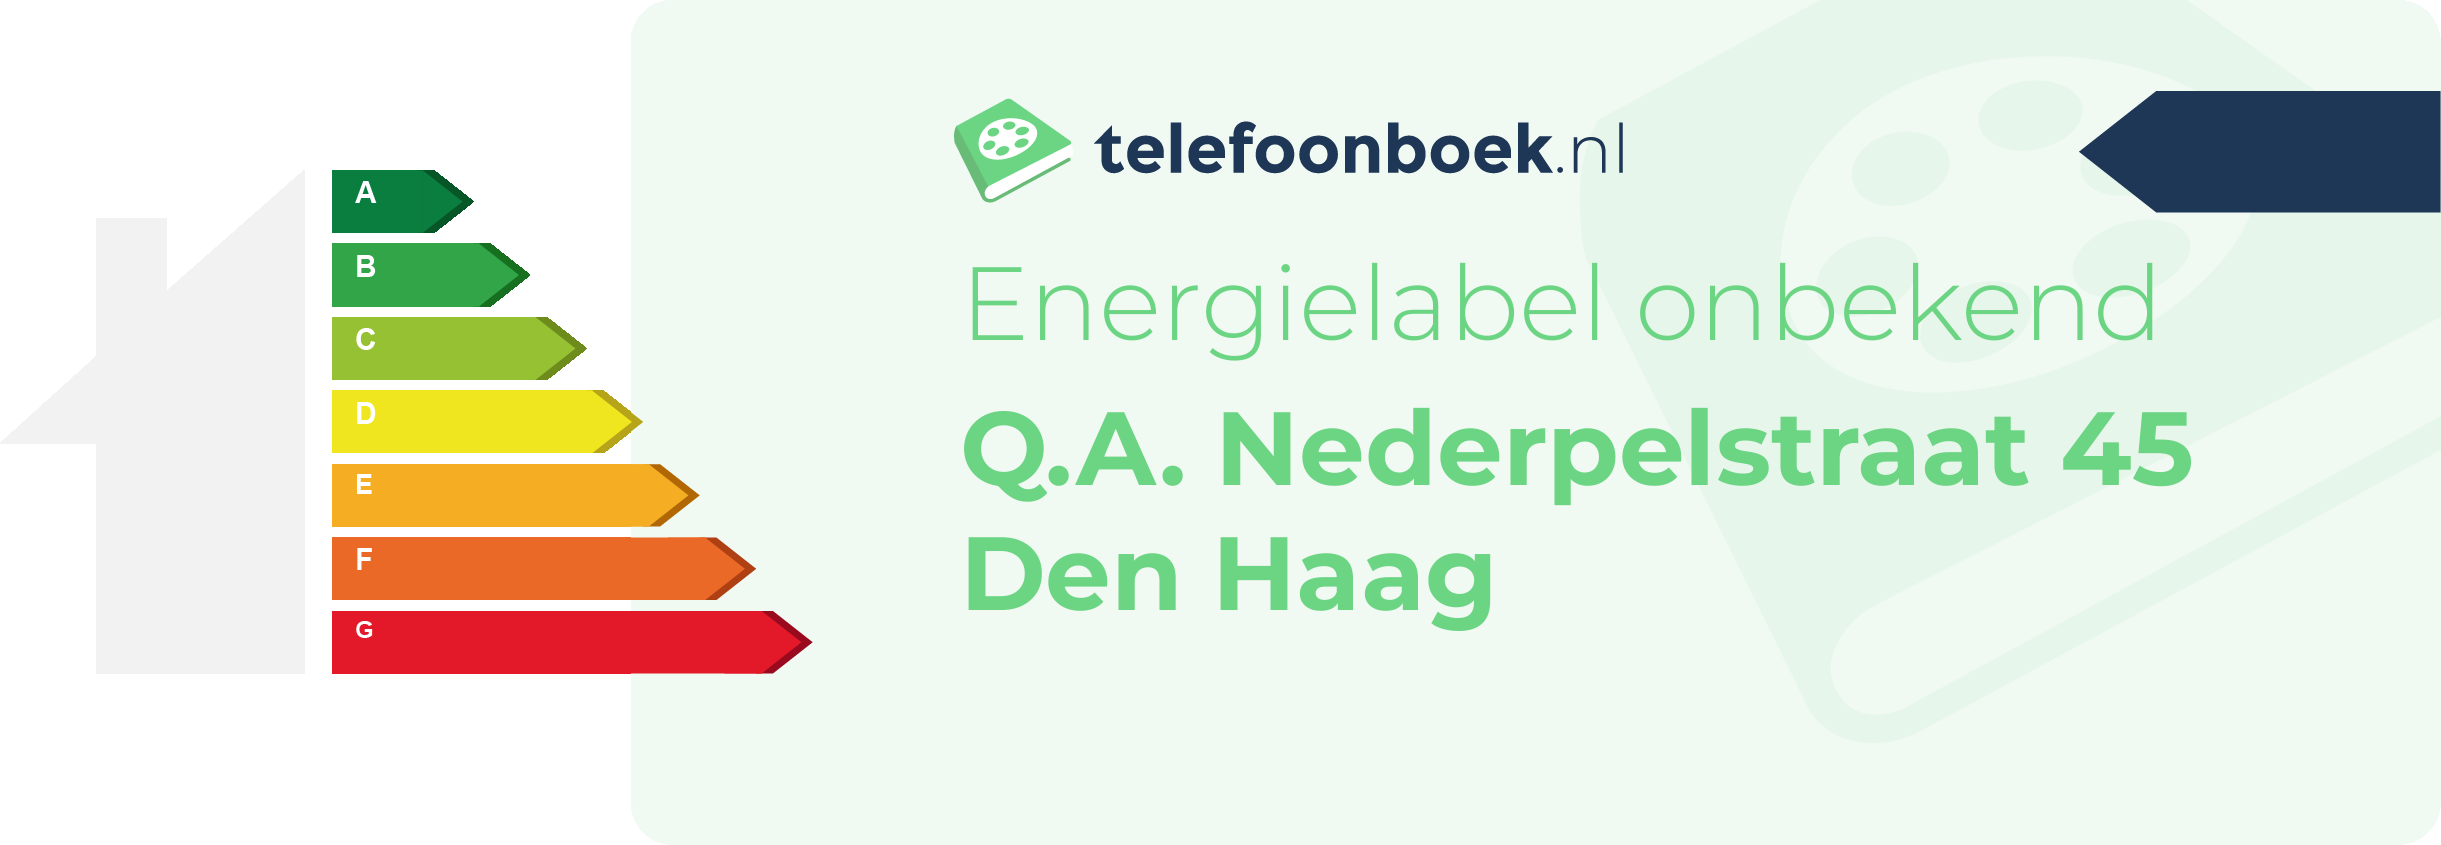 Energielabel Q.A. Nederpelstraat 45 Den Haag